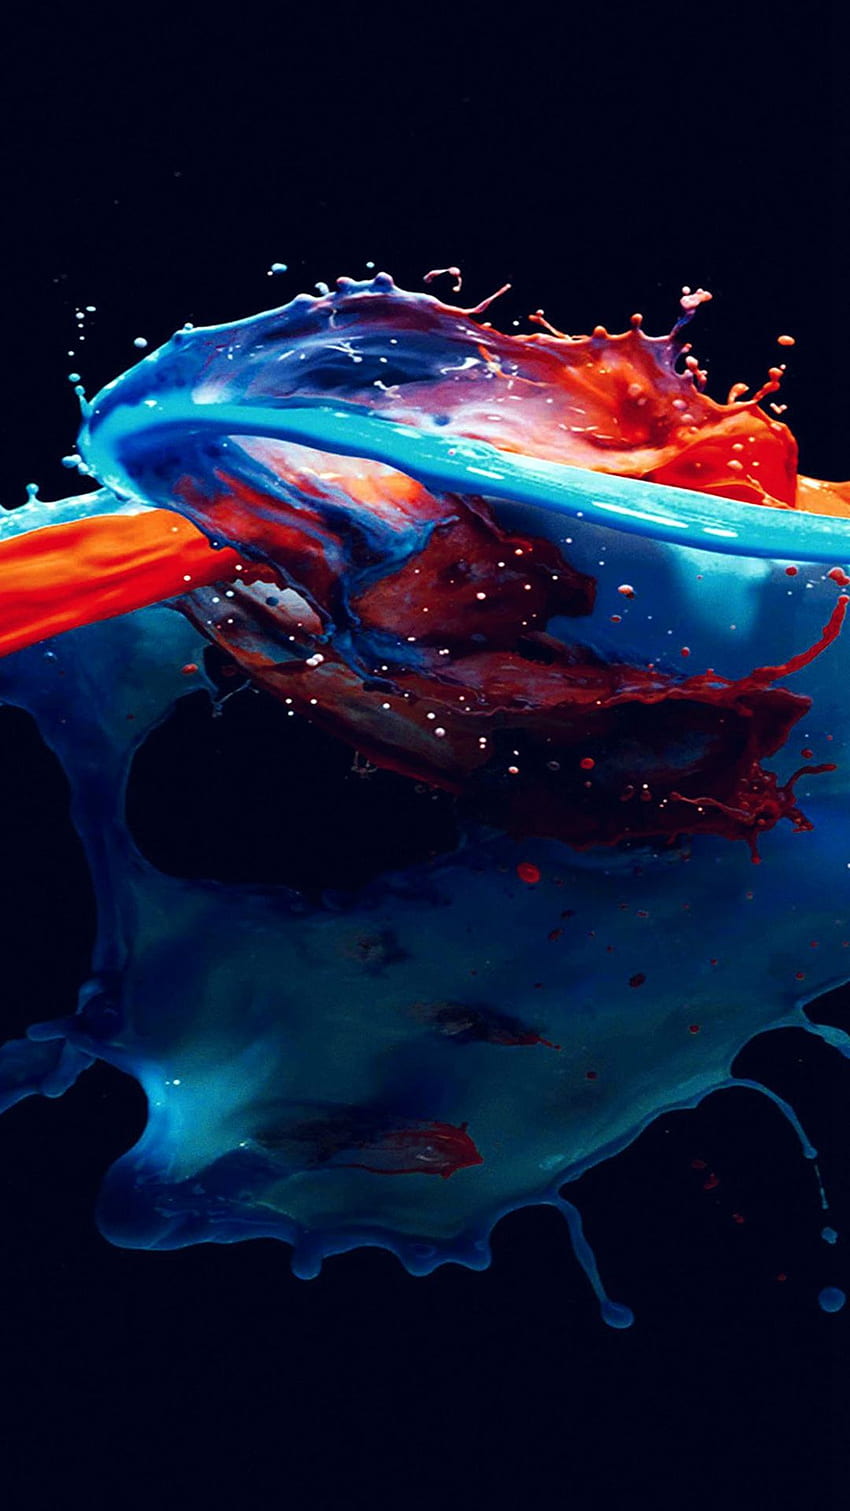 ペイント スプラッシュ アート イラスト ダーク ブルー レッド 水彩画 iPhone 8 HD電話の壁紙